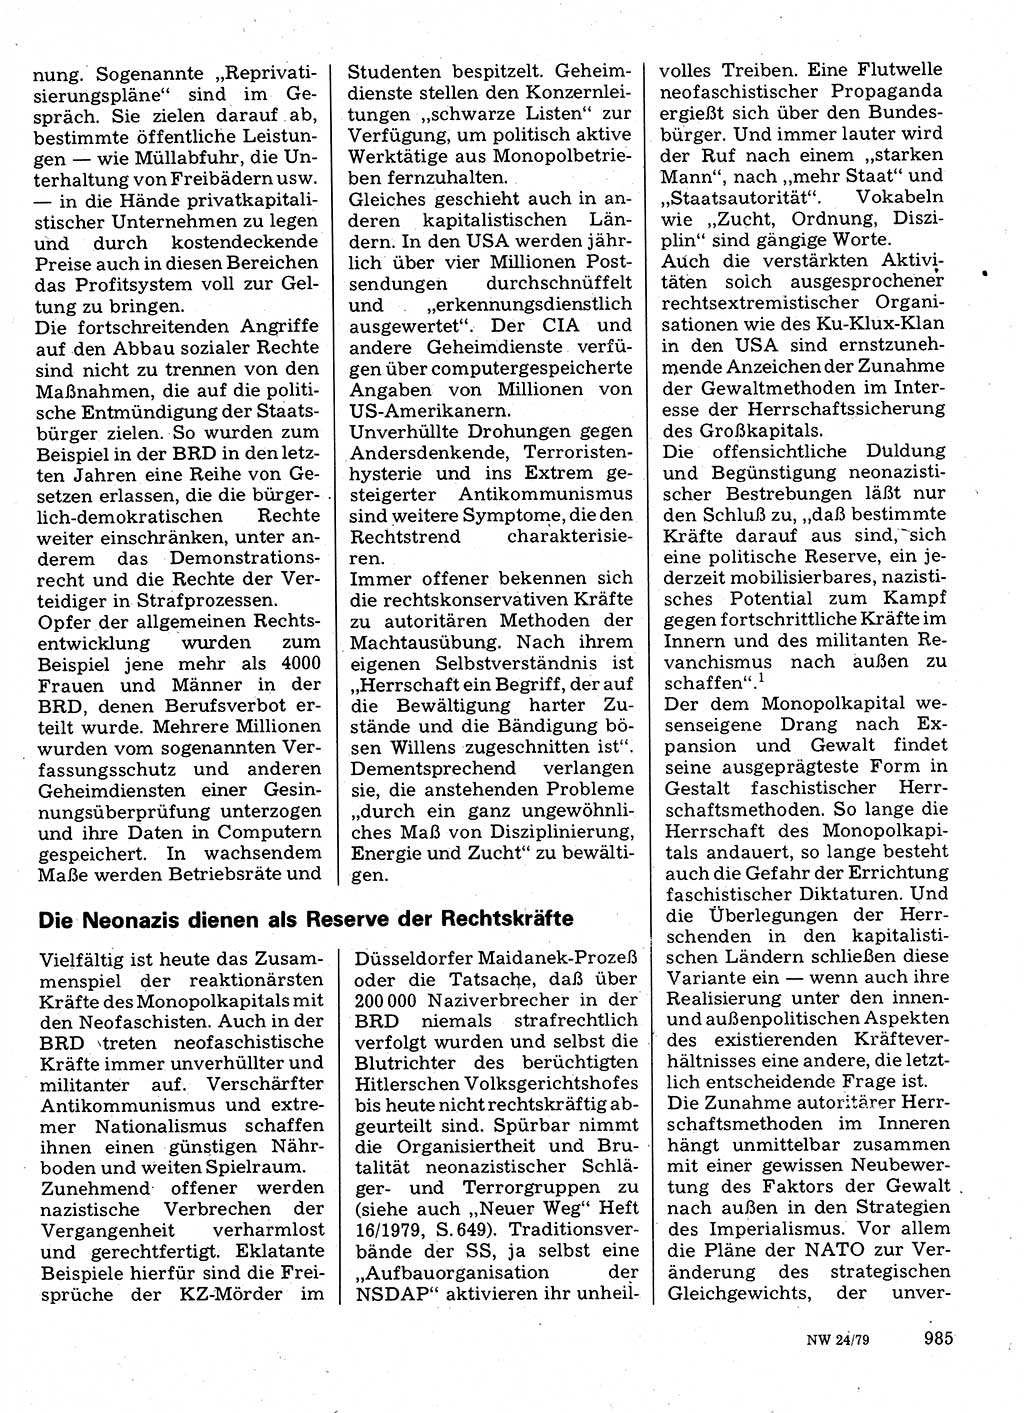 Neuer Weg (NW), Organ des Zentralkomitees (ZK) der SED (Sozialistische Einheitspartei Deutschlands) für Fragen des Parteilebens, 34. Jahrgang [Deutsche Demokratische Republik (DDR)] 1979, Seite 985 (NW ZK SED DDR 1979, S. 985)